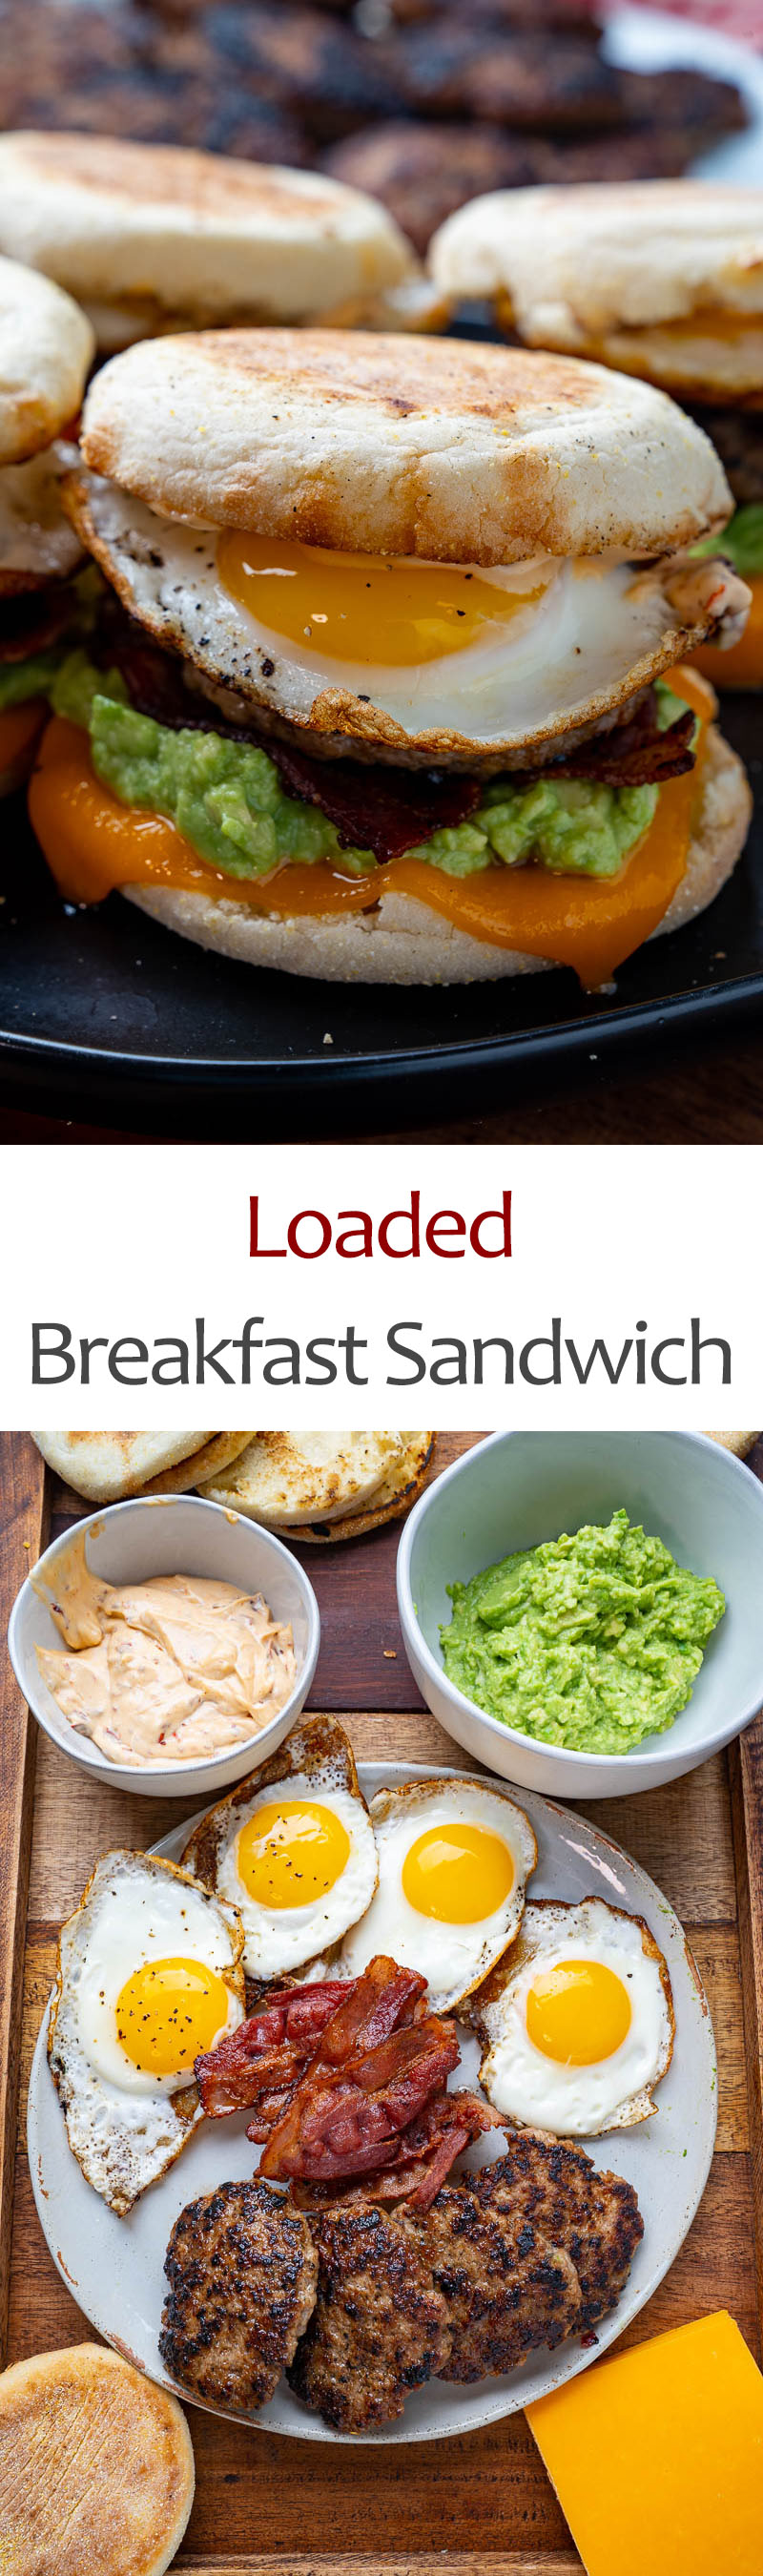 Loaded Breakfast Sandwich